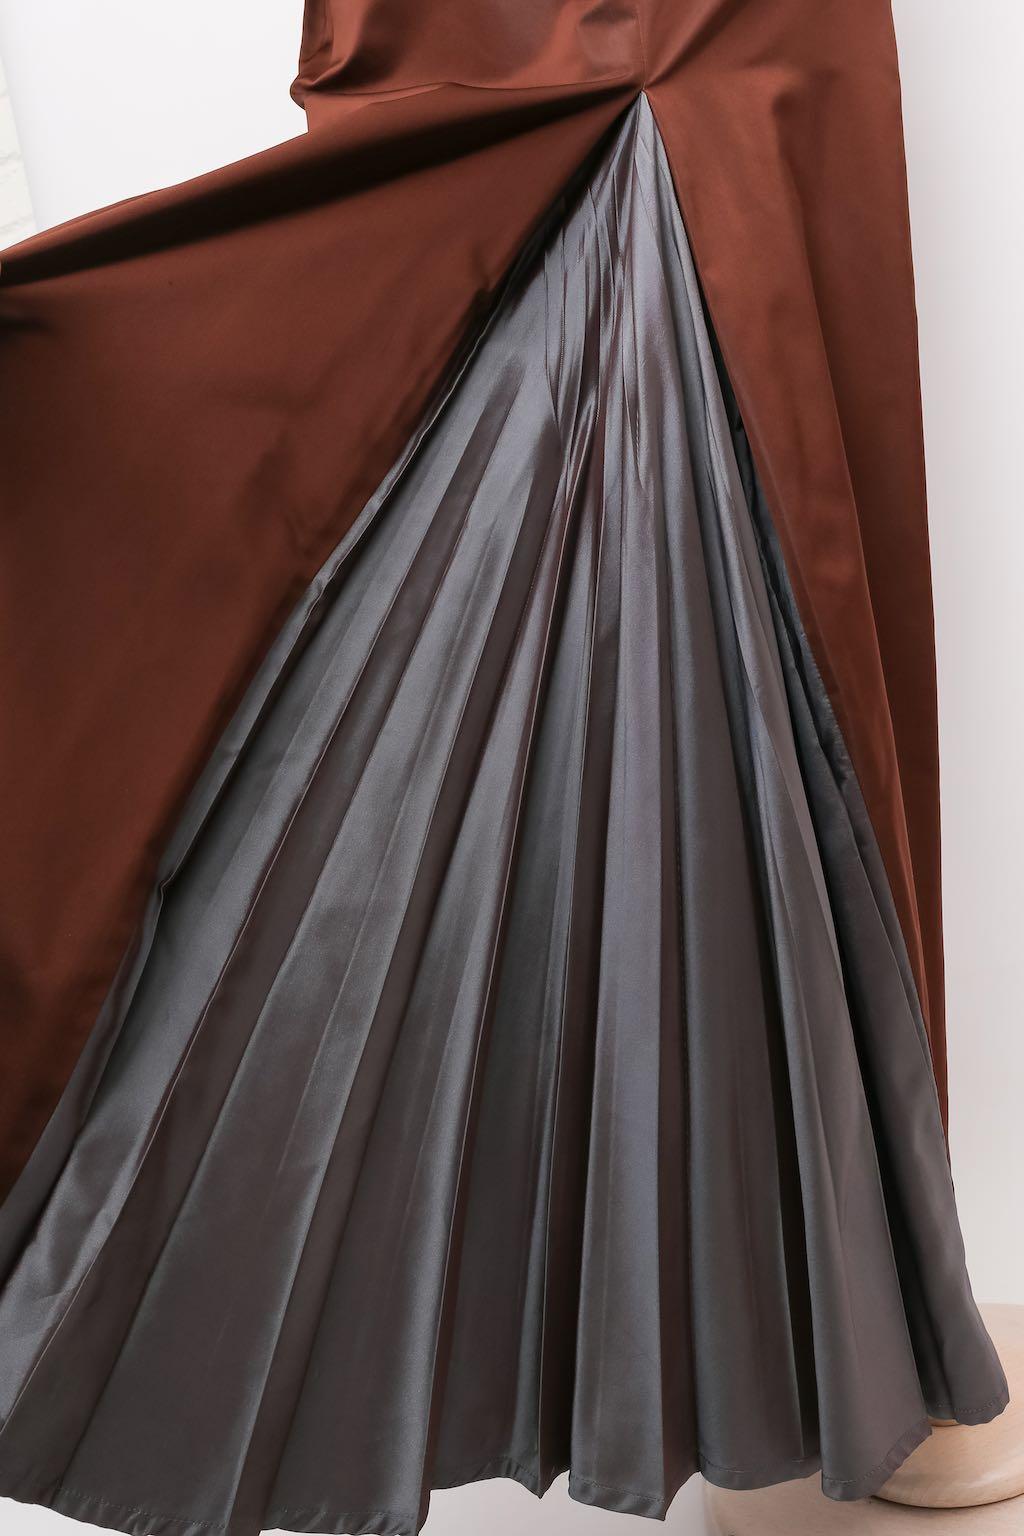 Jean-Paul Gaultier Taffeta Dress, Size 38FR For Sale 4